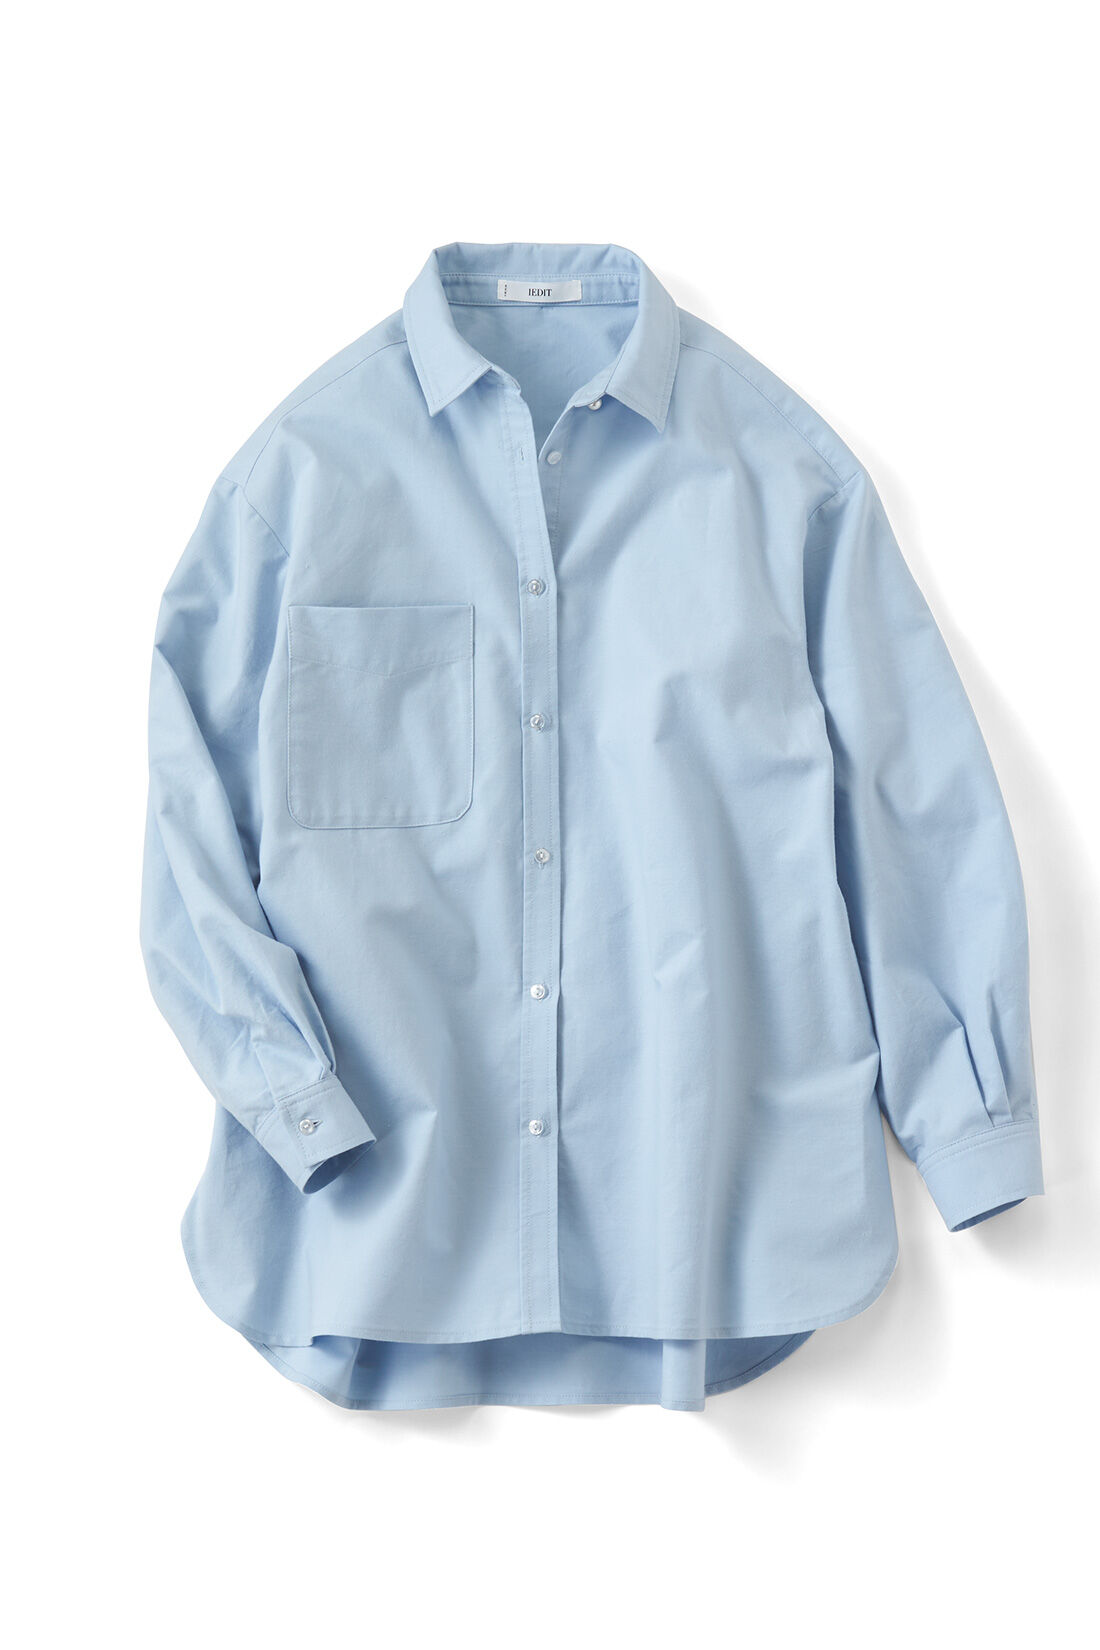 IEDIT[イディット]　バックフレアーデザインがきいた オックスフォード素材のこなれ見えシャツ〈グレー〉|ブルー